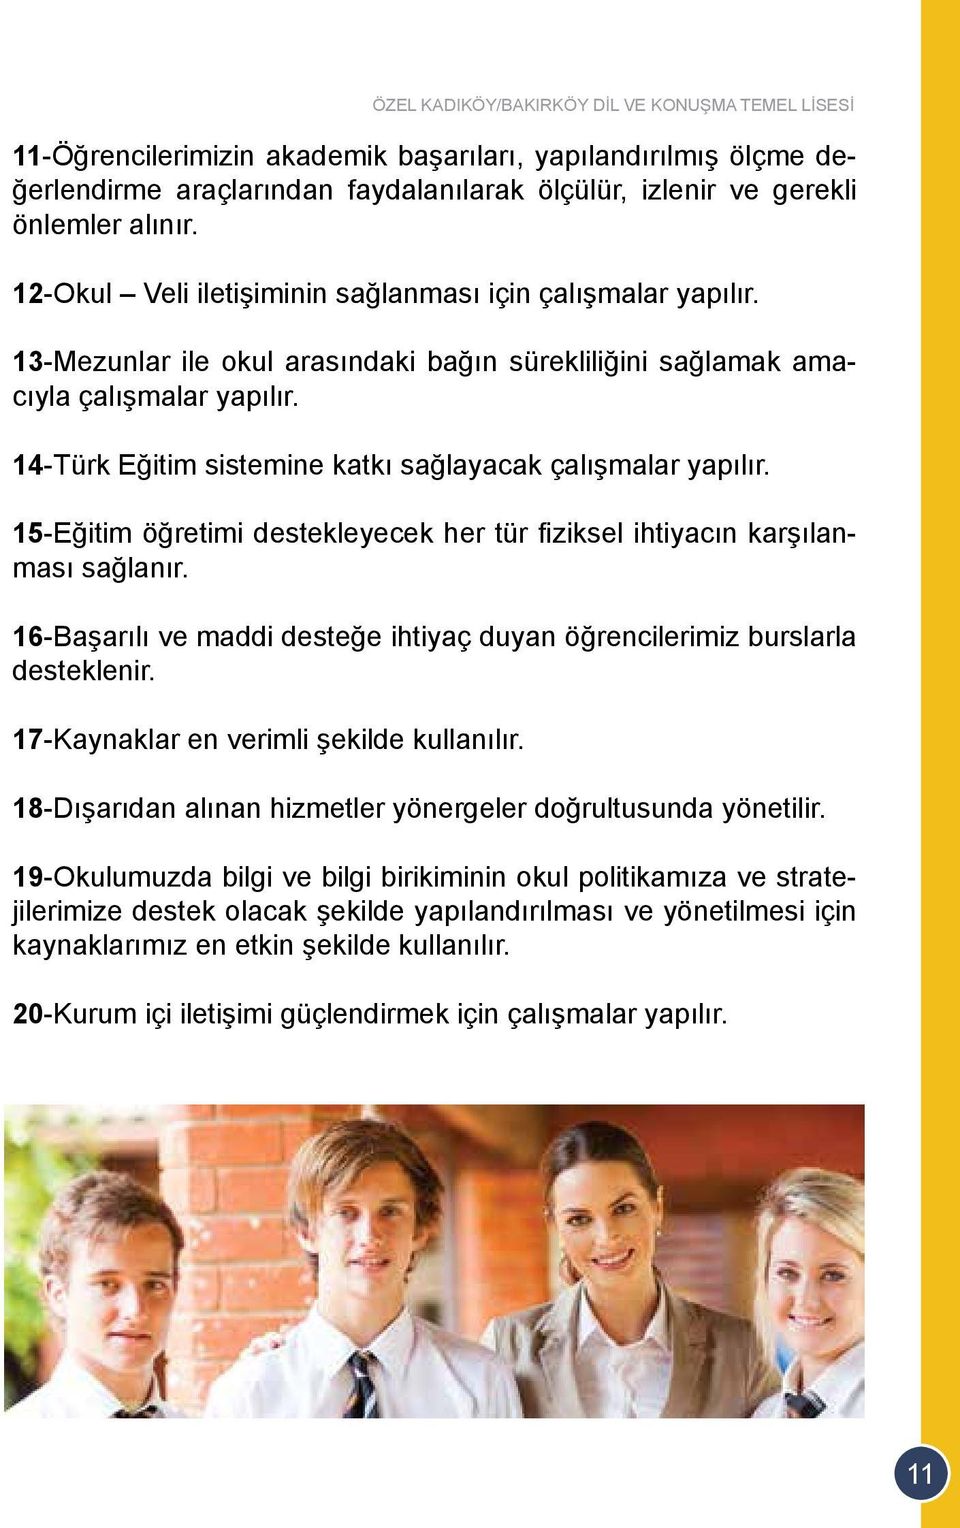 14-Türk Eğitim sistemine katkı sağlayacak çalışmalar yapılır. 15-Eğitim öğretimi destekleyecek her tür fiziksel ihtiyacın karşılanması sağlanır.